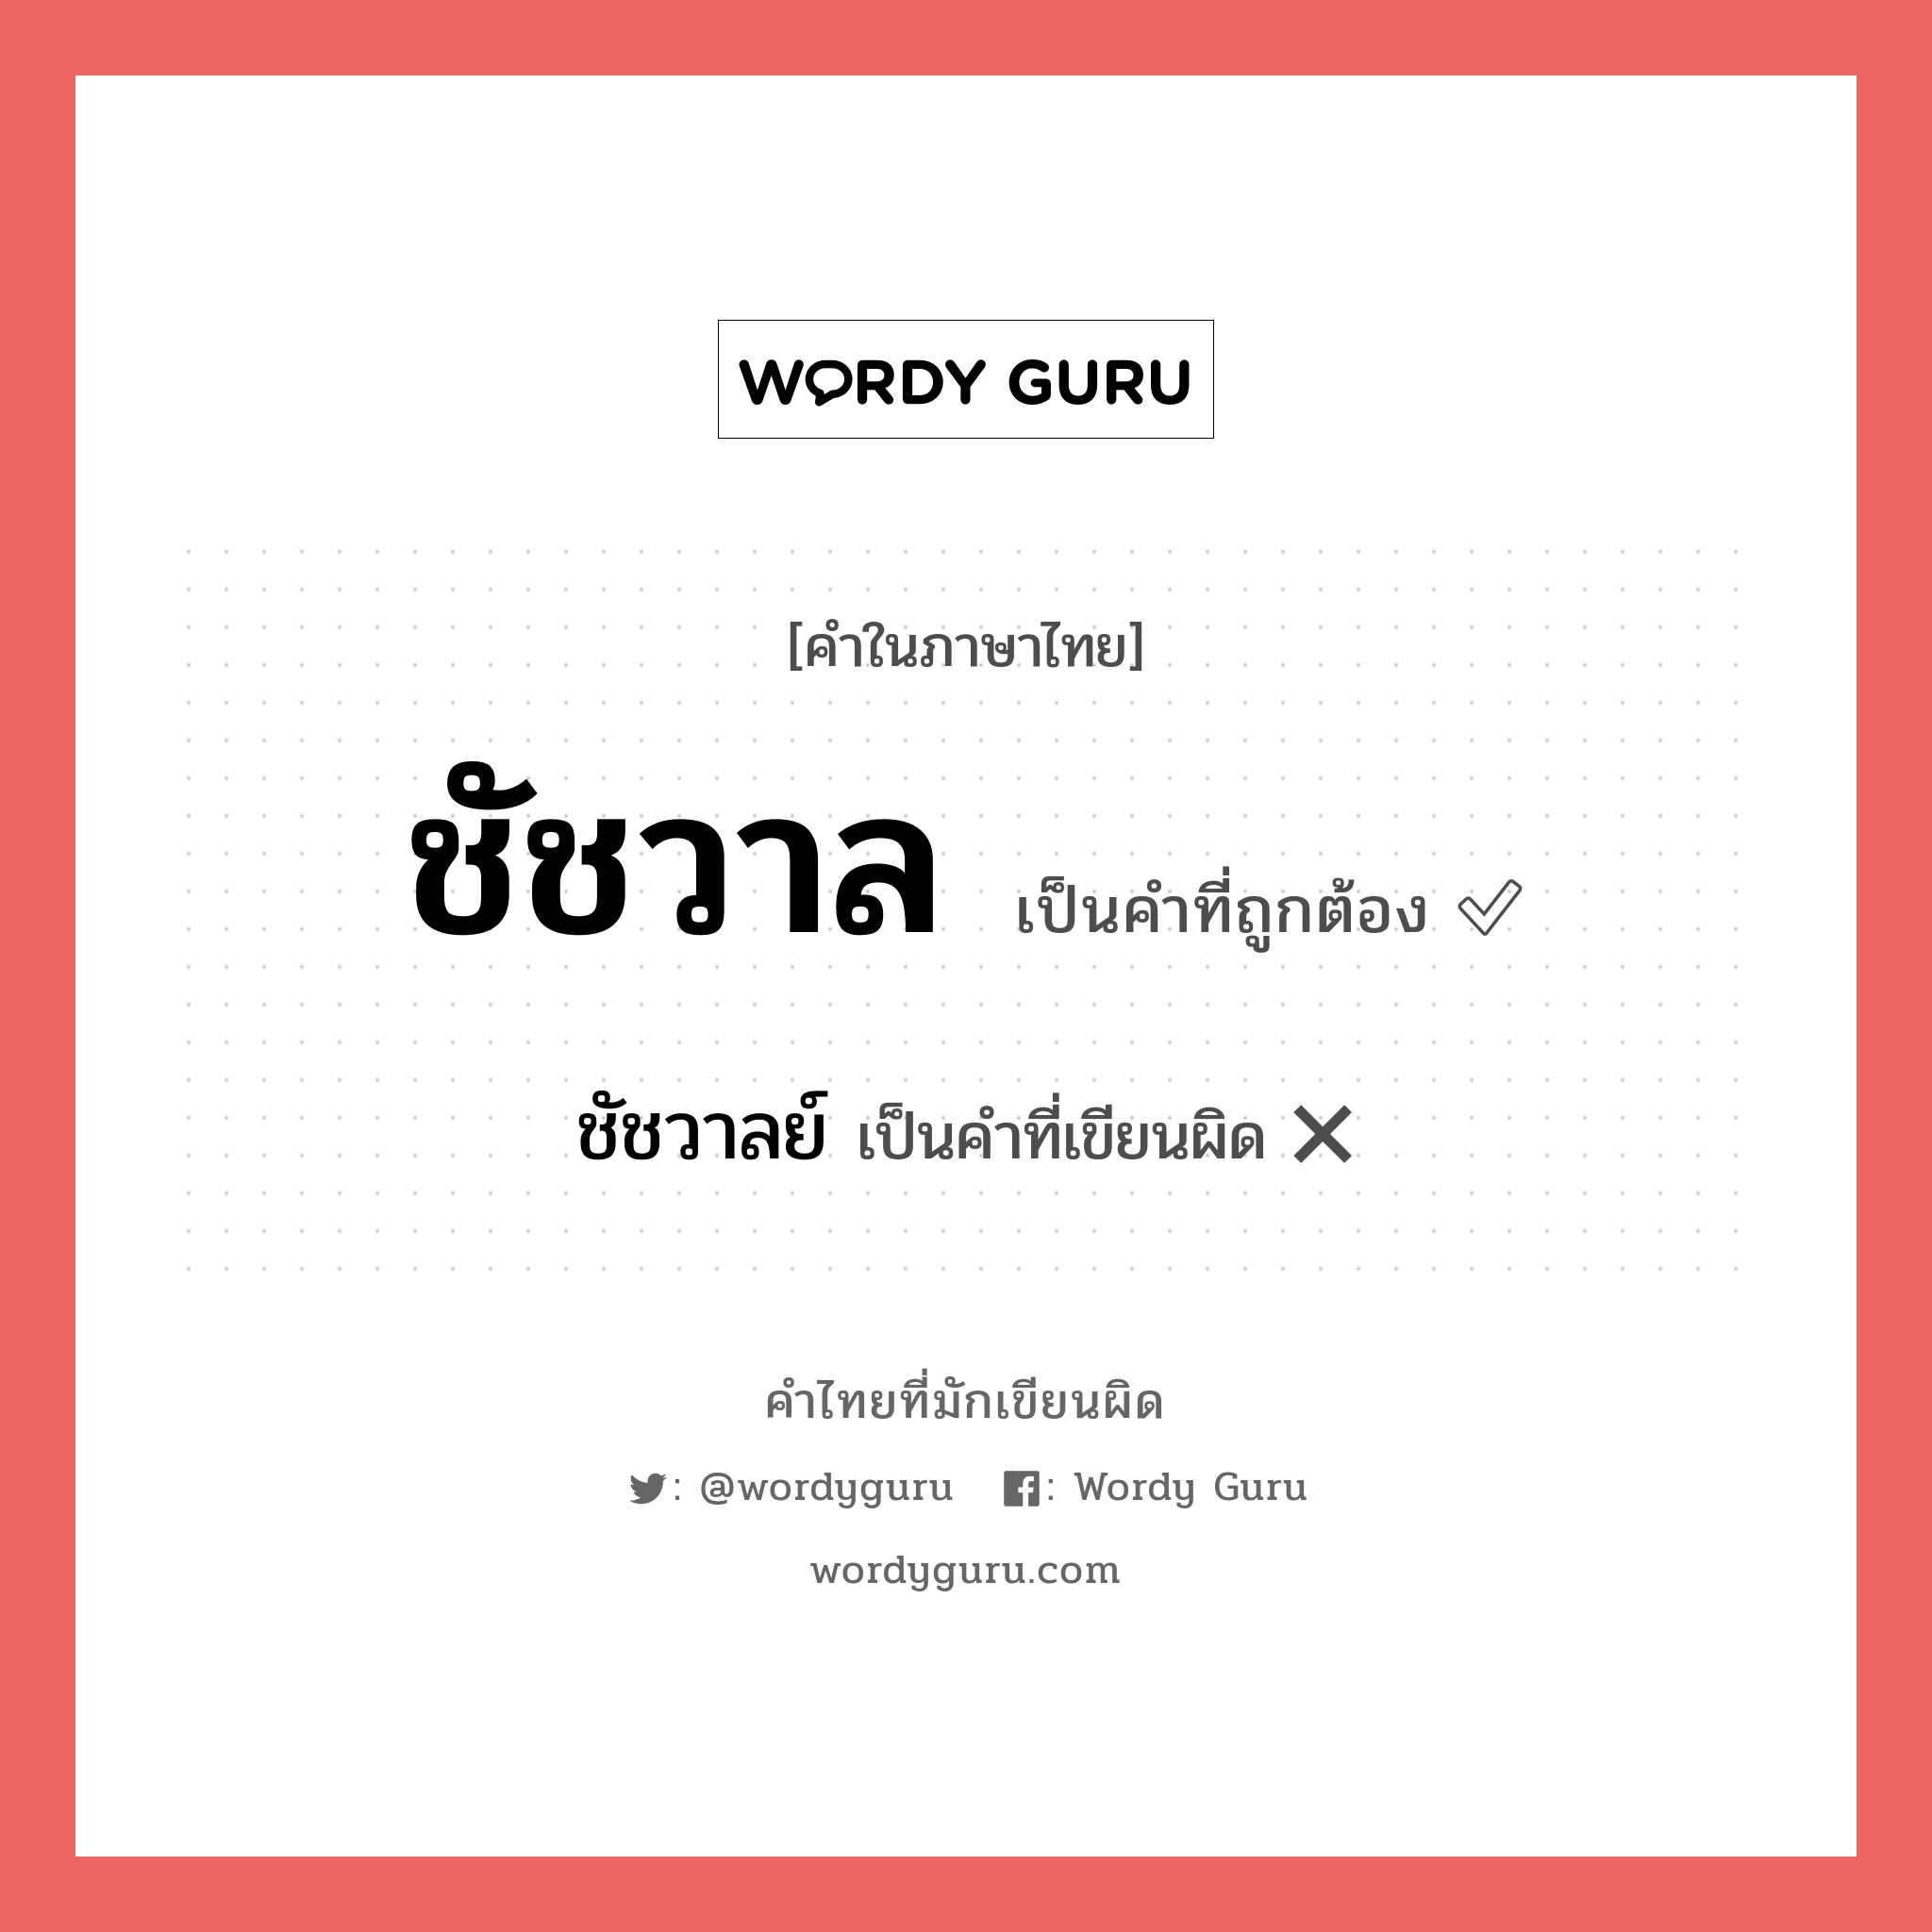 ชัชวาลย์ หรือ ชัชวาล คำไหนเขียนถูก?, คำในภาษาไทยที่มักเขียนผิด ชัชวาลย์ คำที่ผิด ❌ ชัชวาล